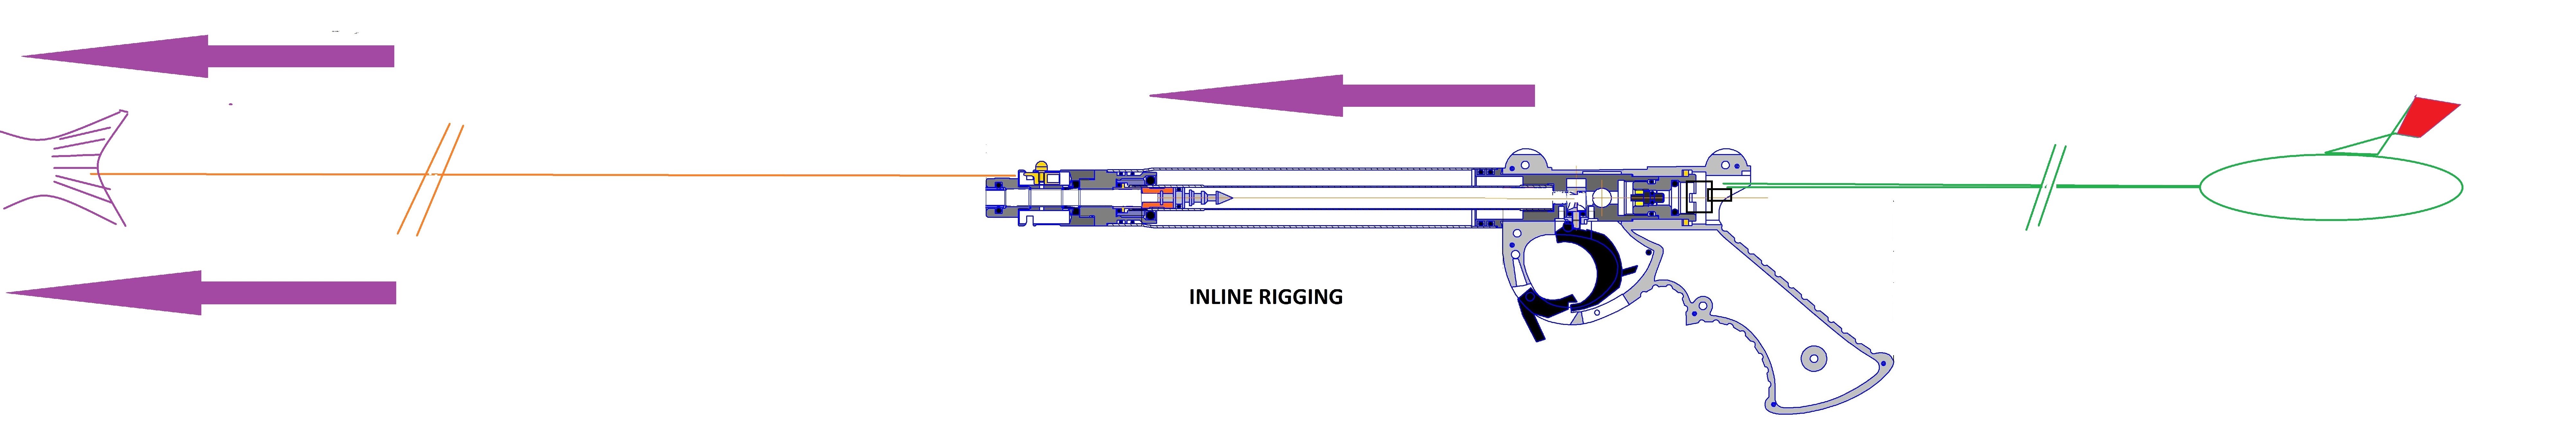 inline rigging.jpg